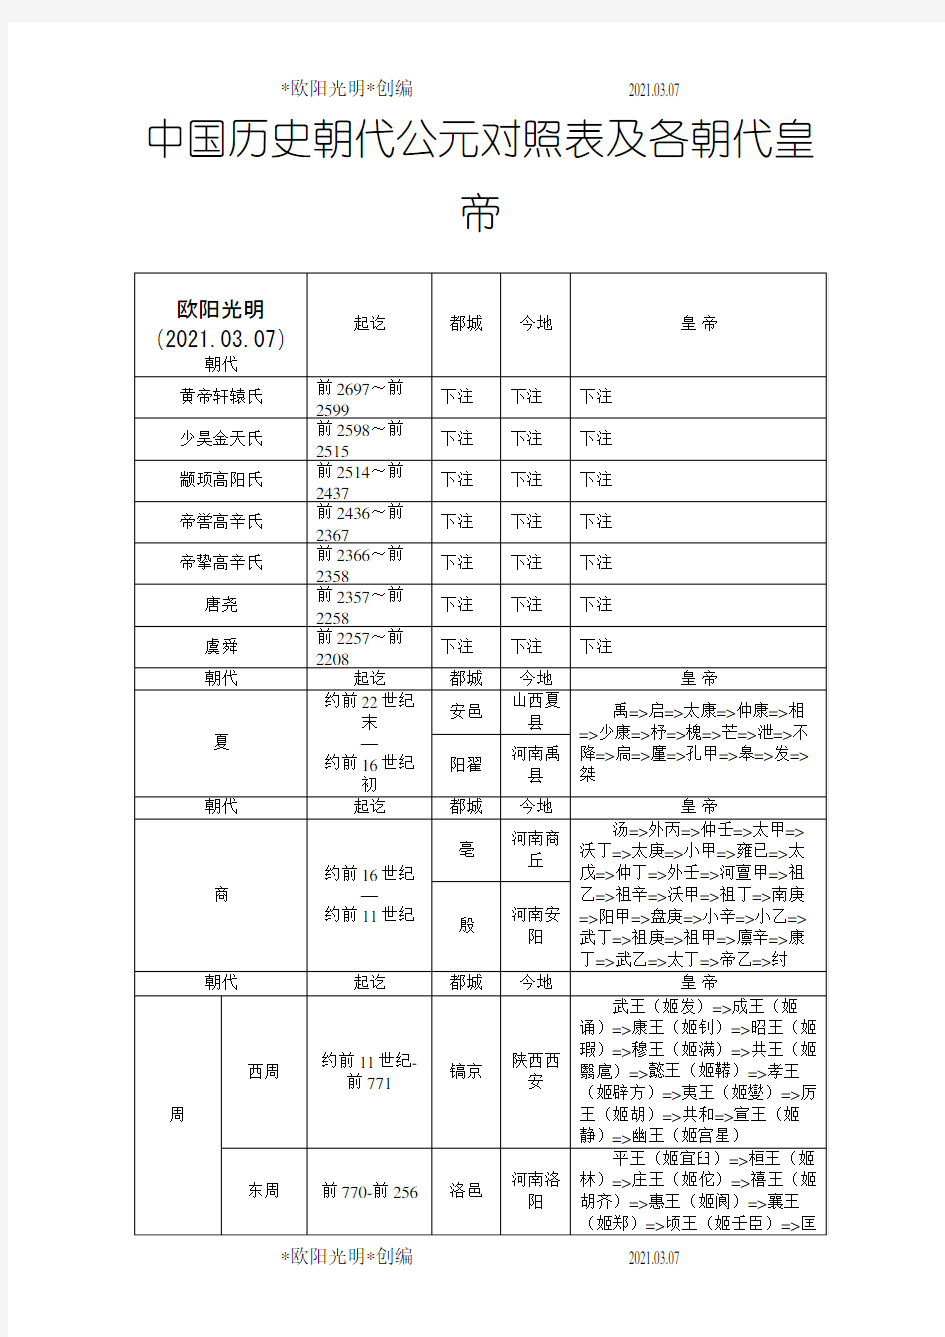 2021年中国历史朝代公元对照表及各朝代皇帝